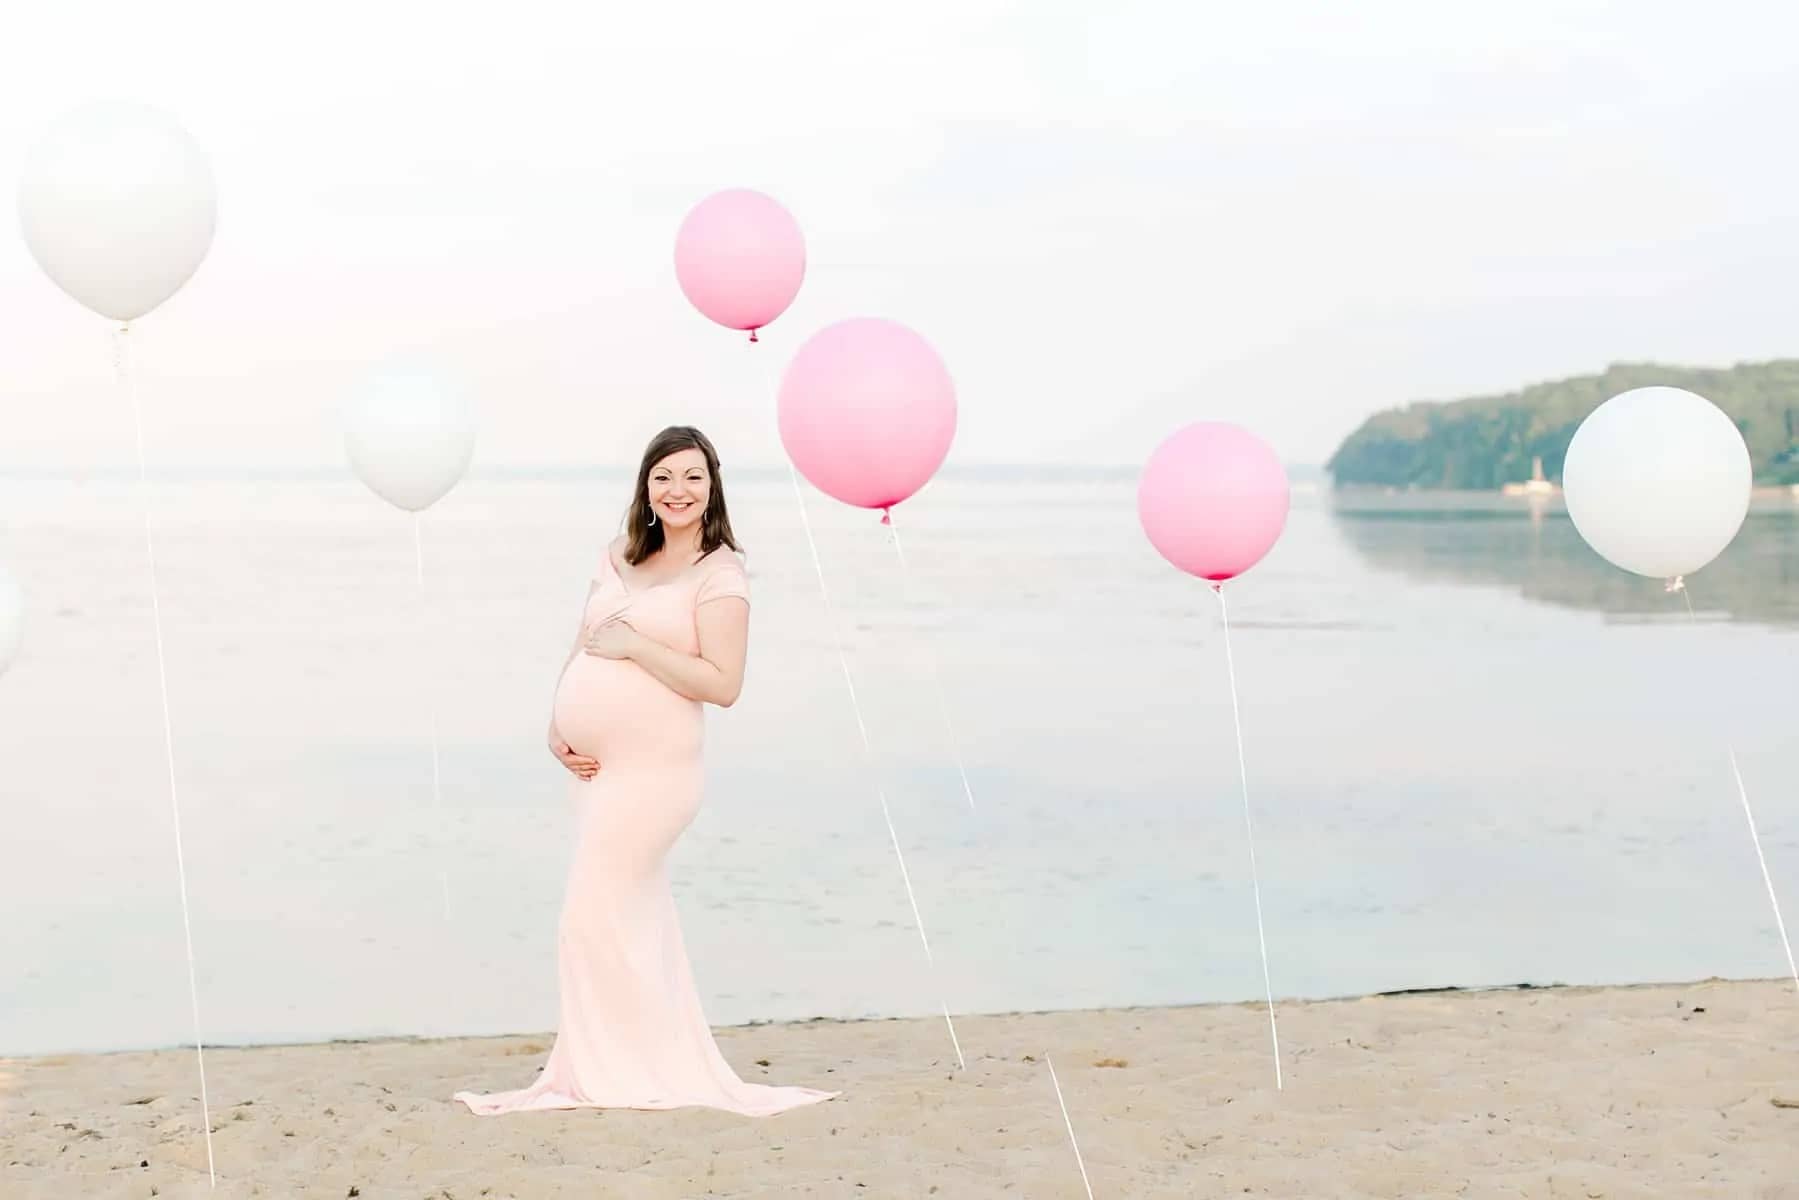 Maternity Photography Stafford Va